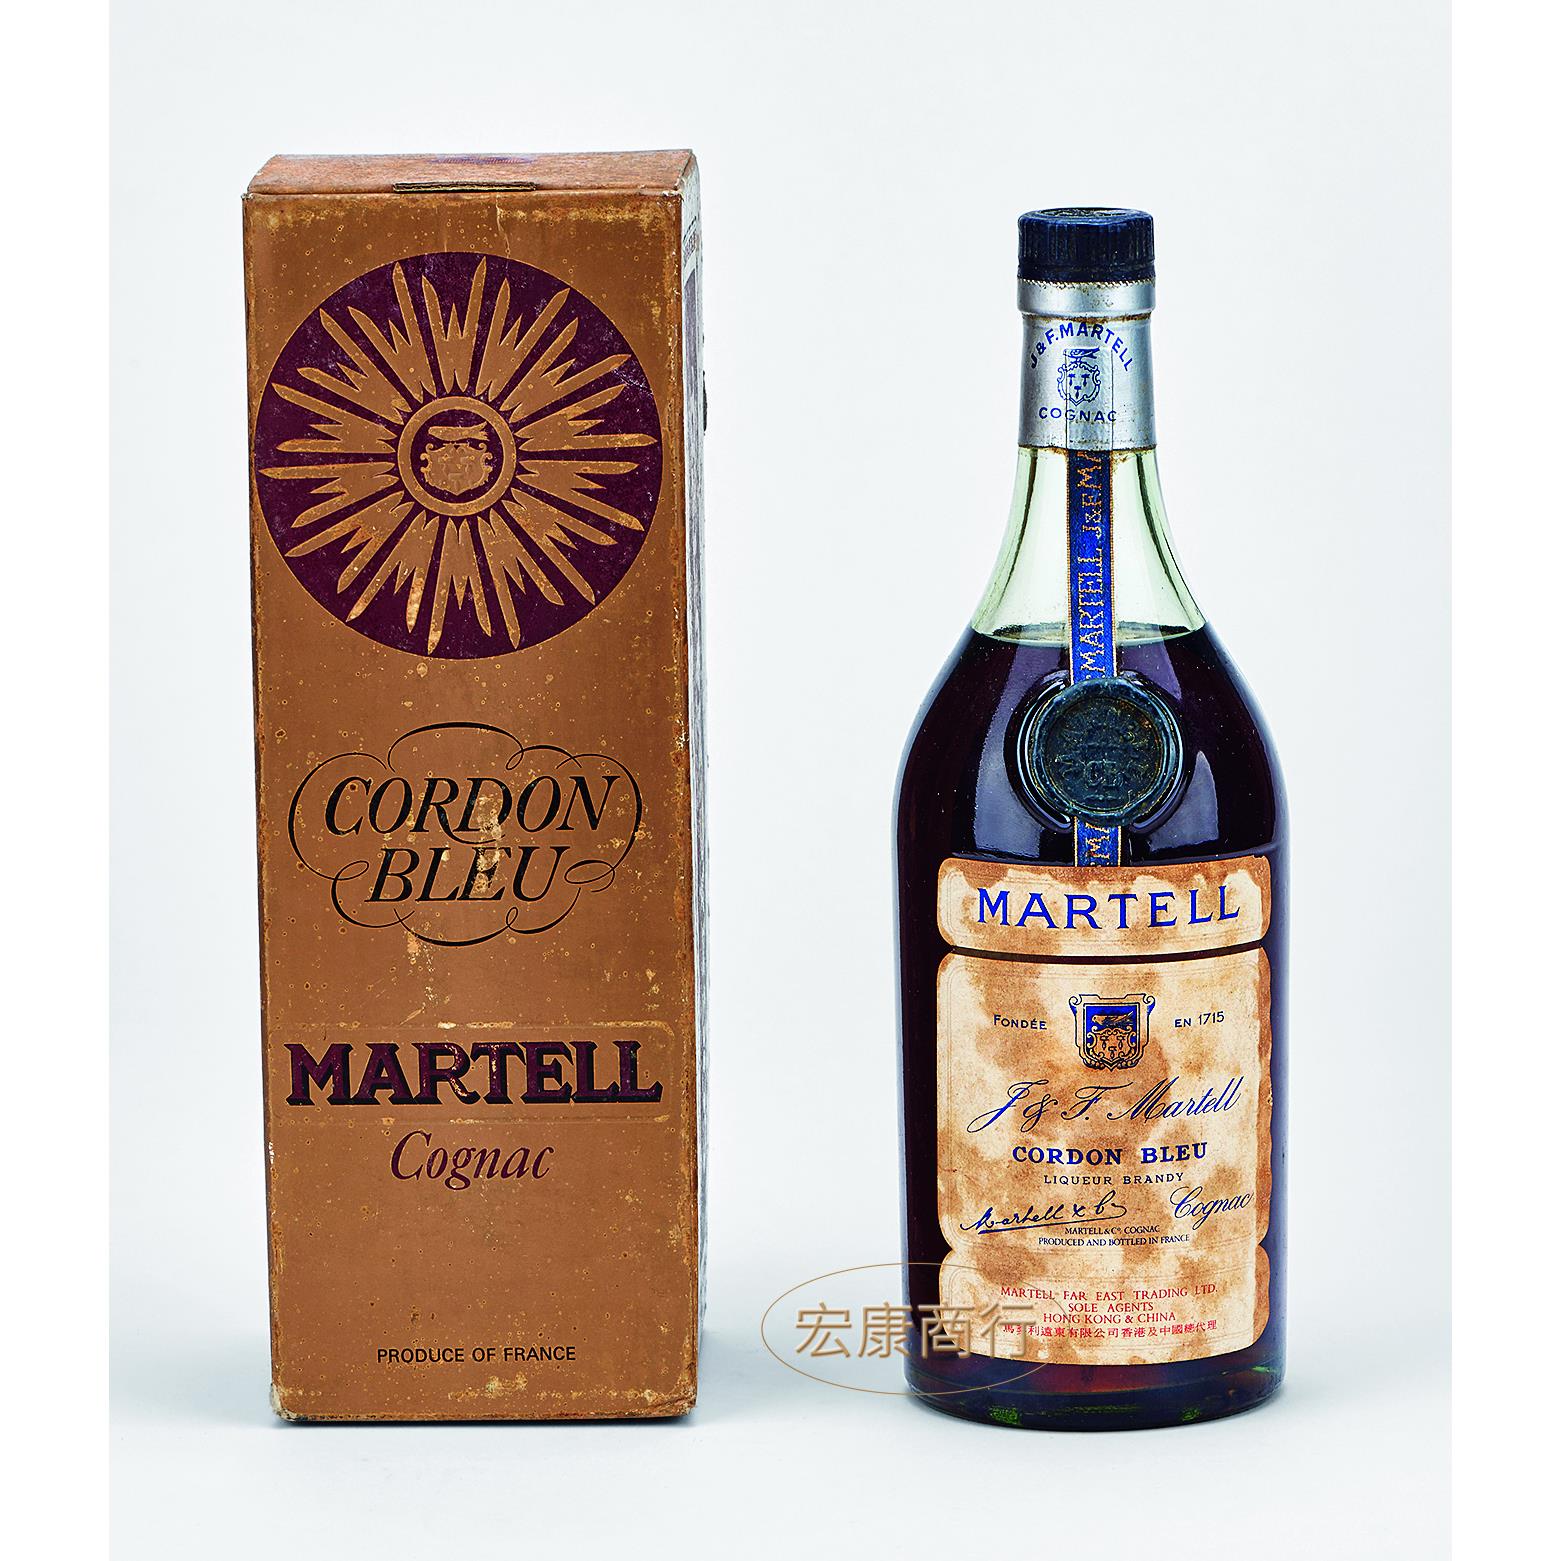 回收馬爹利藍帶紅太陽 Martell Cordon Bleu cognac brandy